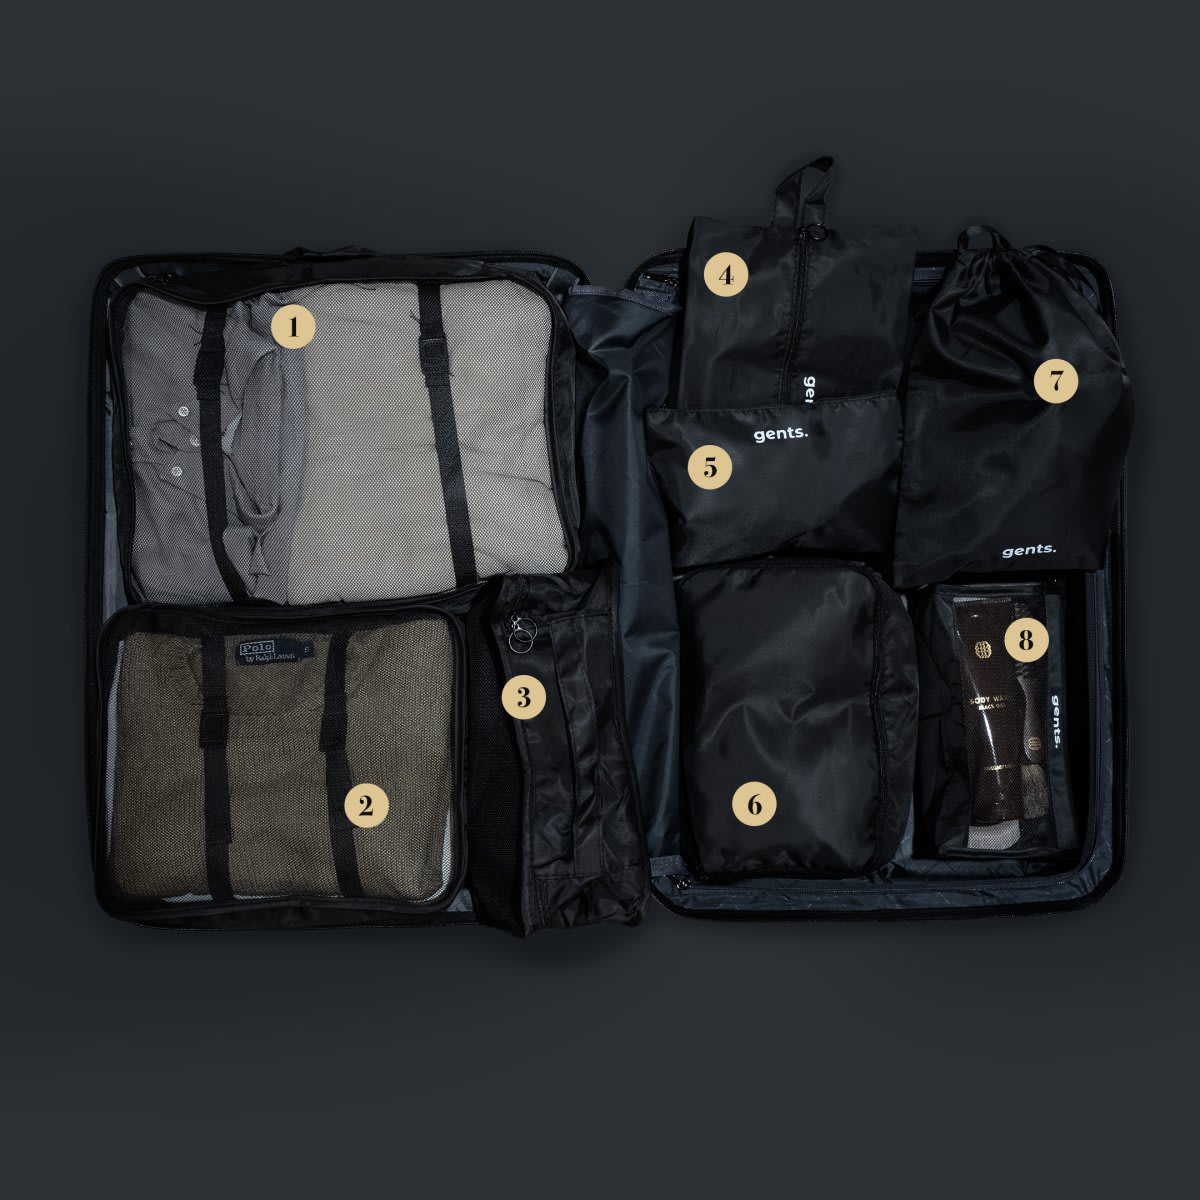 Resväska organiseringsset - Packkuber